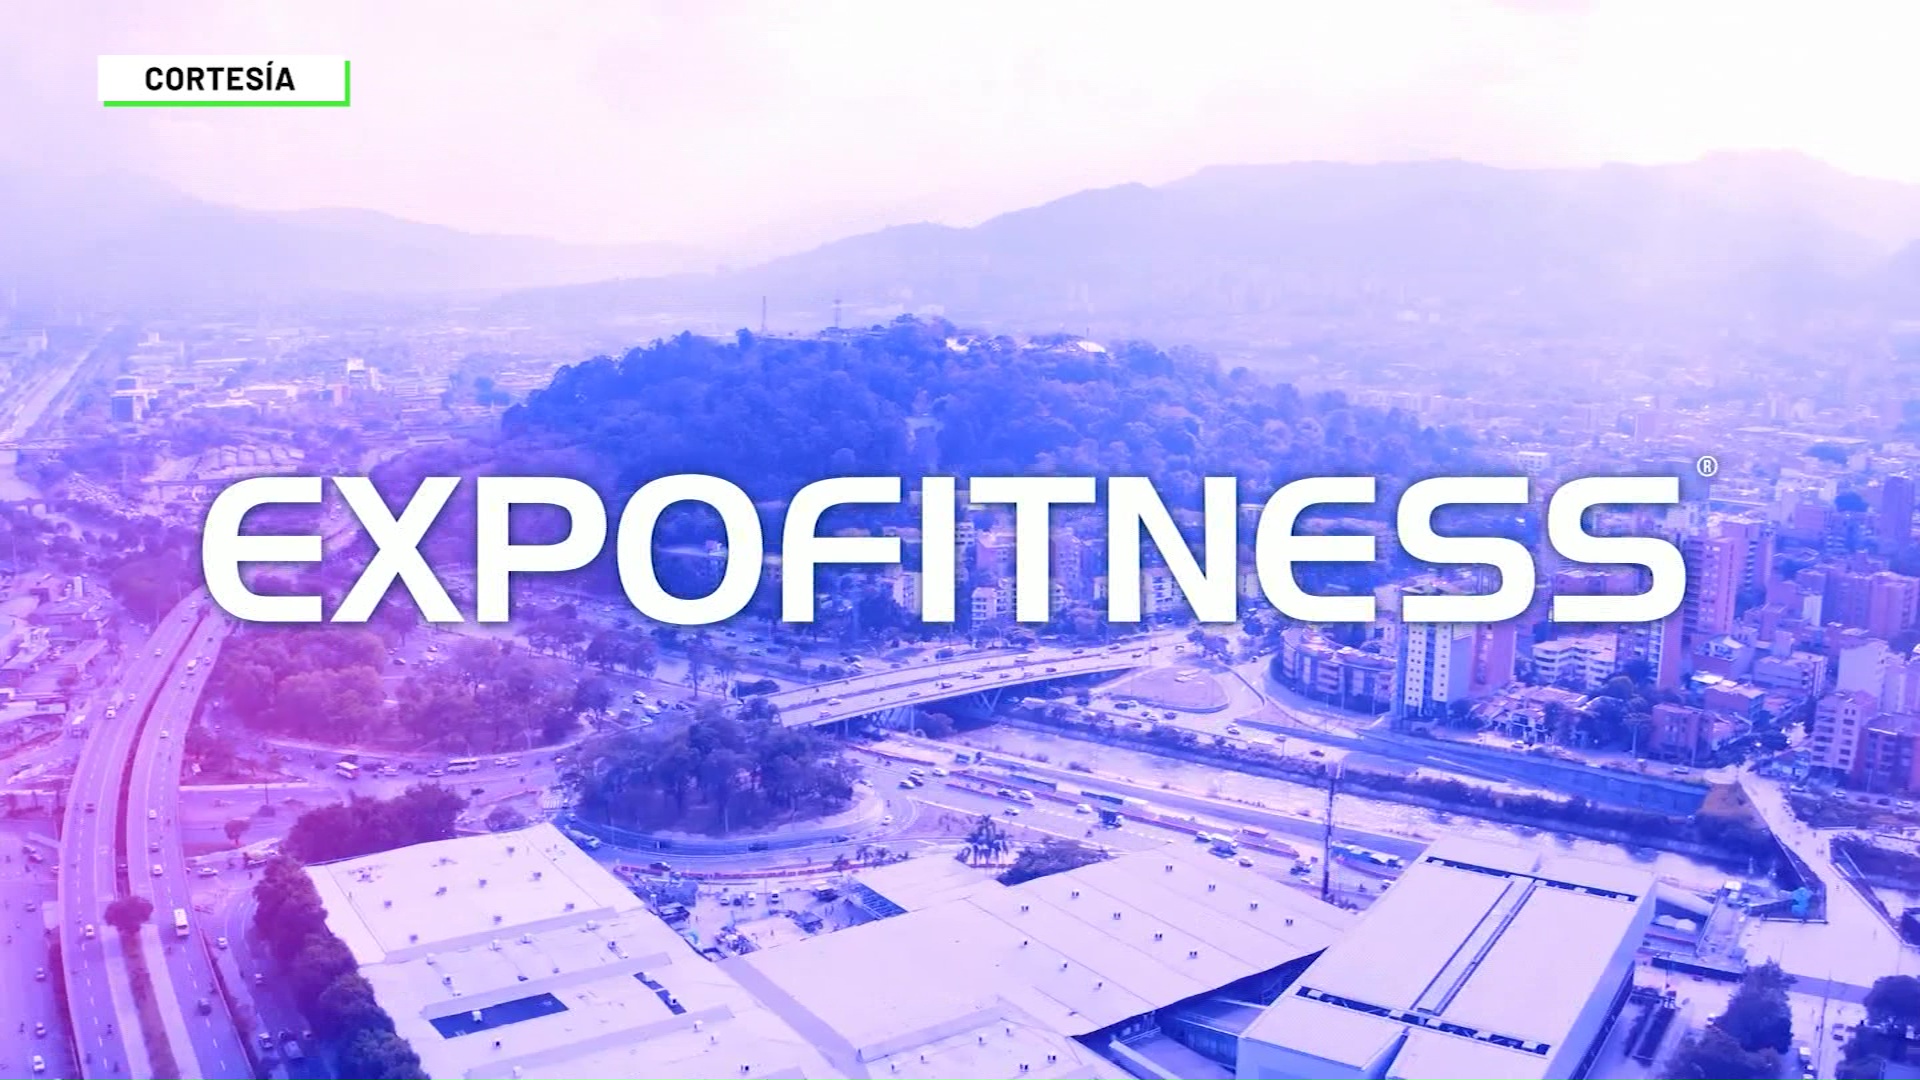 ExpoFitness trae novedades del deporte y la salud